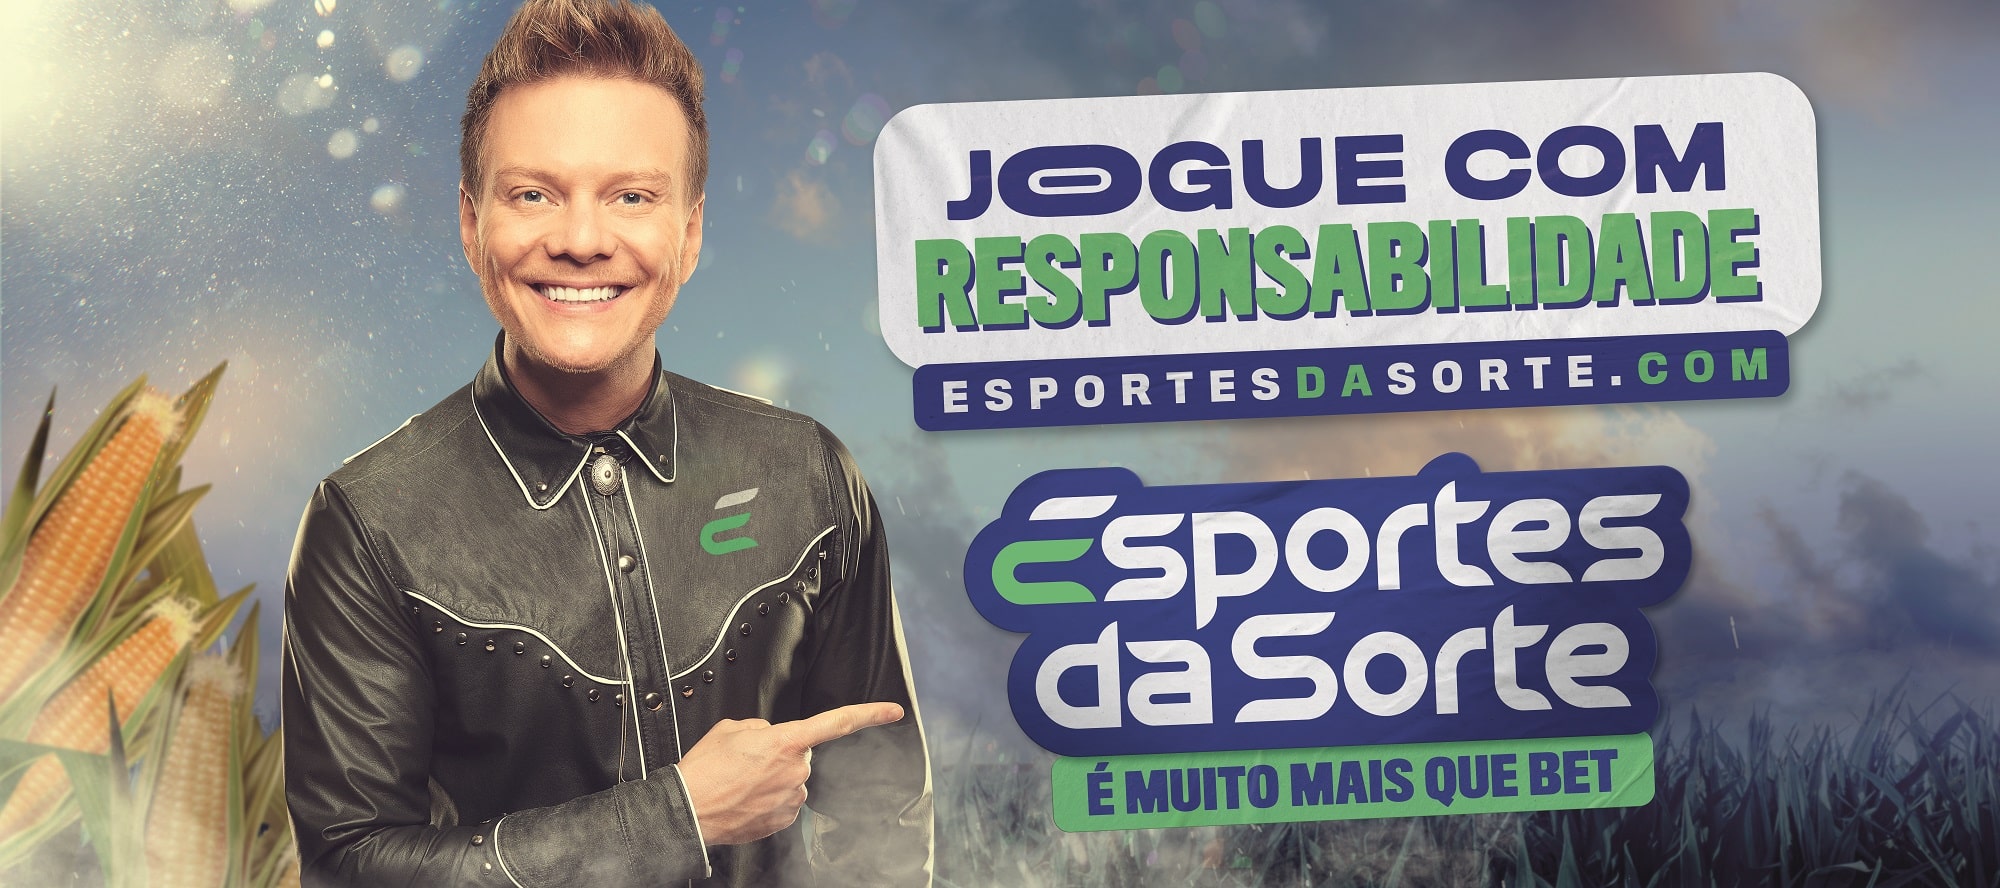 UOL Esporte - Acompanhe ao vivo os principais eventos esportivos no Brasil e do mundo - UOL Esporte